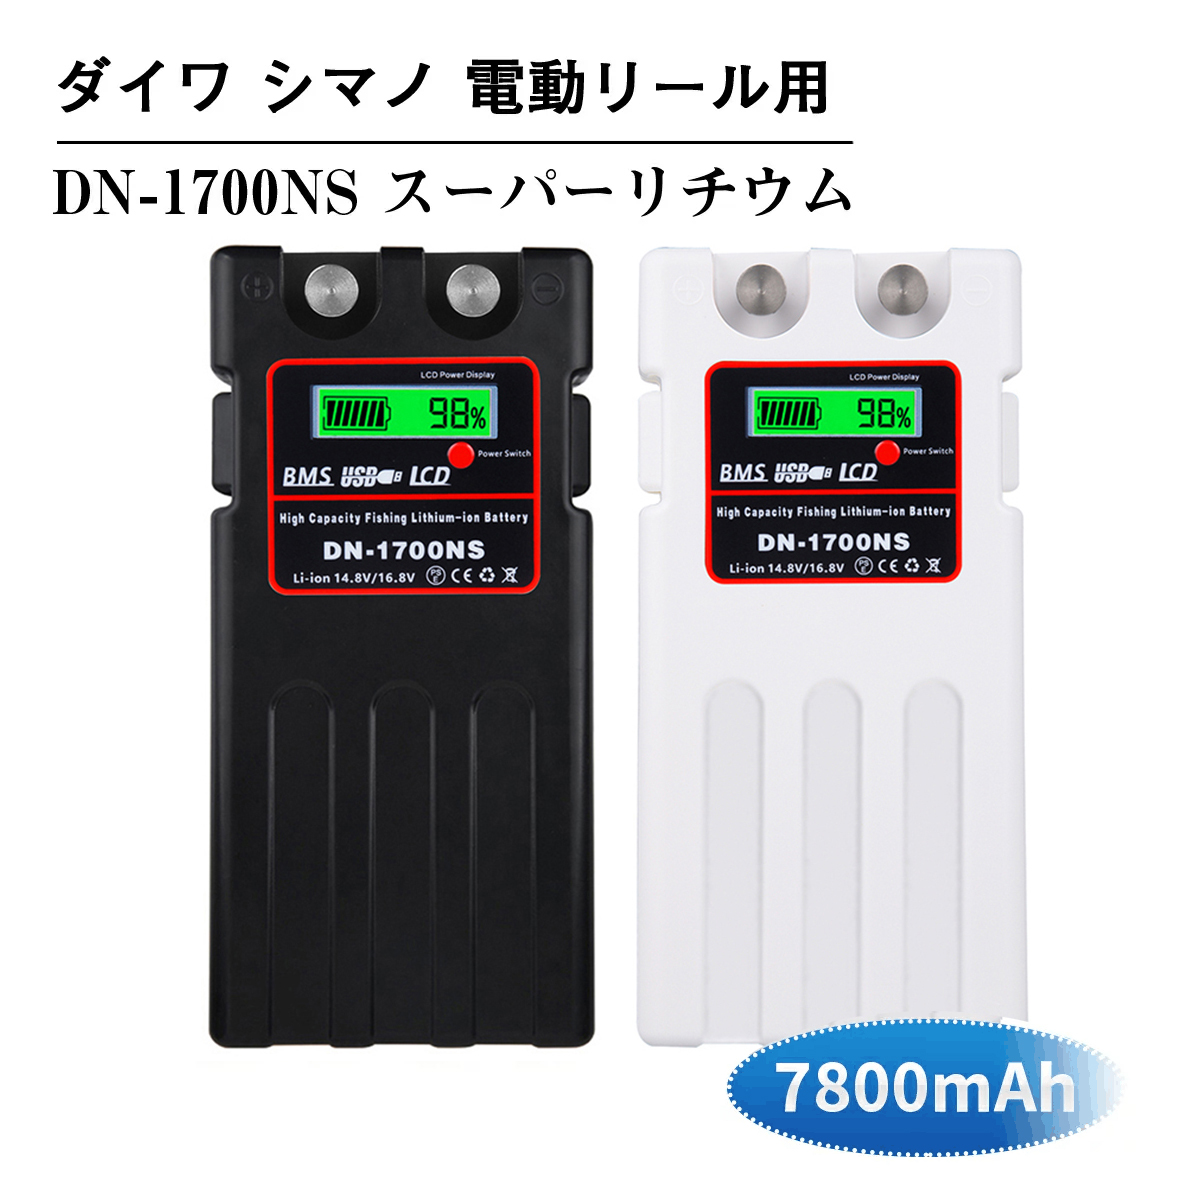 軽くて持ち運びに便利 充電残量が表示される 春早割 USBにてスマホを充電できる ダイワ シマノ 電動リール用 DN-1700NS 日本語説明書付きスーパーリチウム バッテリー 充電器 素晴らしい 14.8V 互換バッテリー 7800mAh セット パナソニックセル内蔵 電動リール